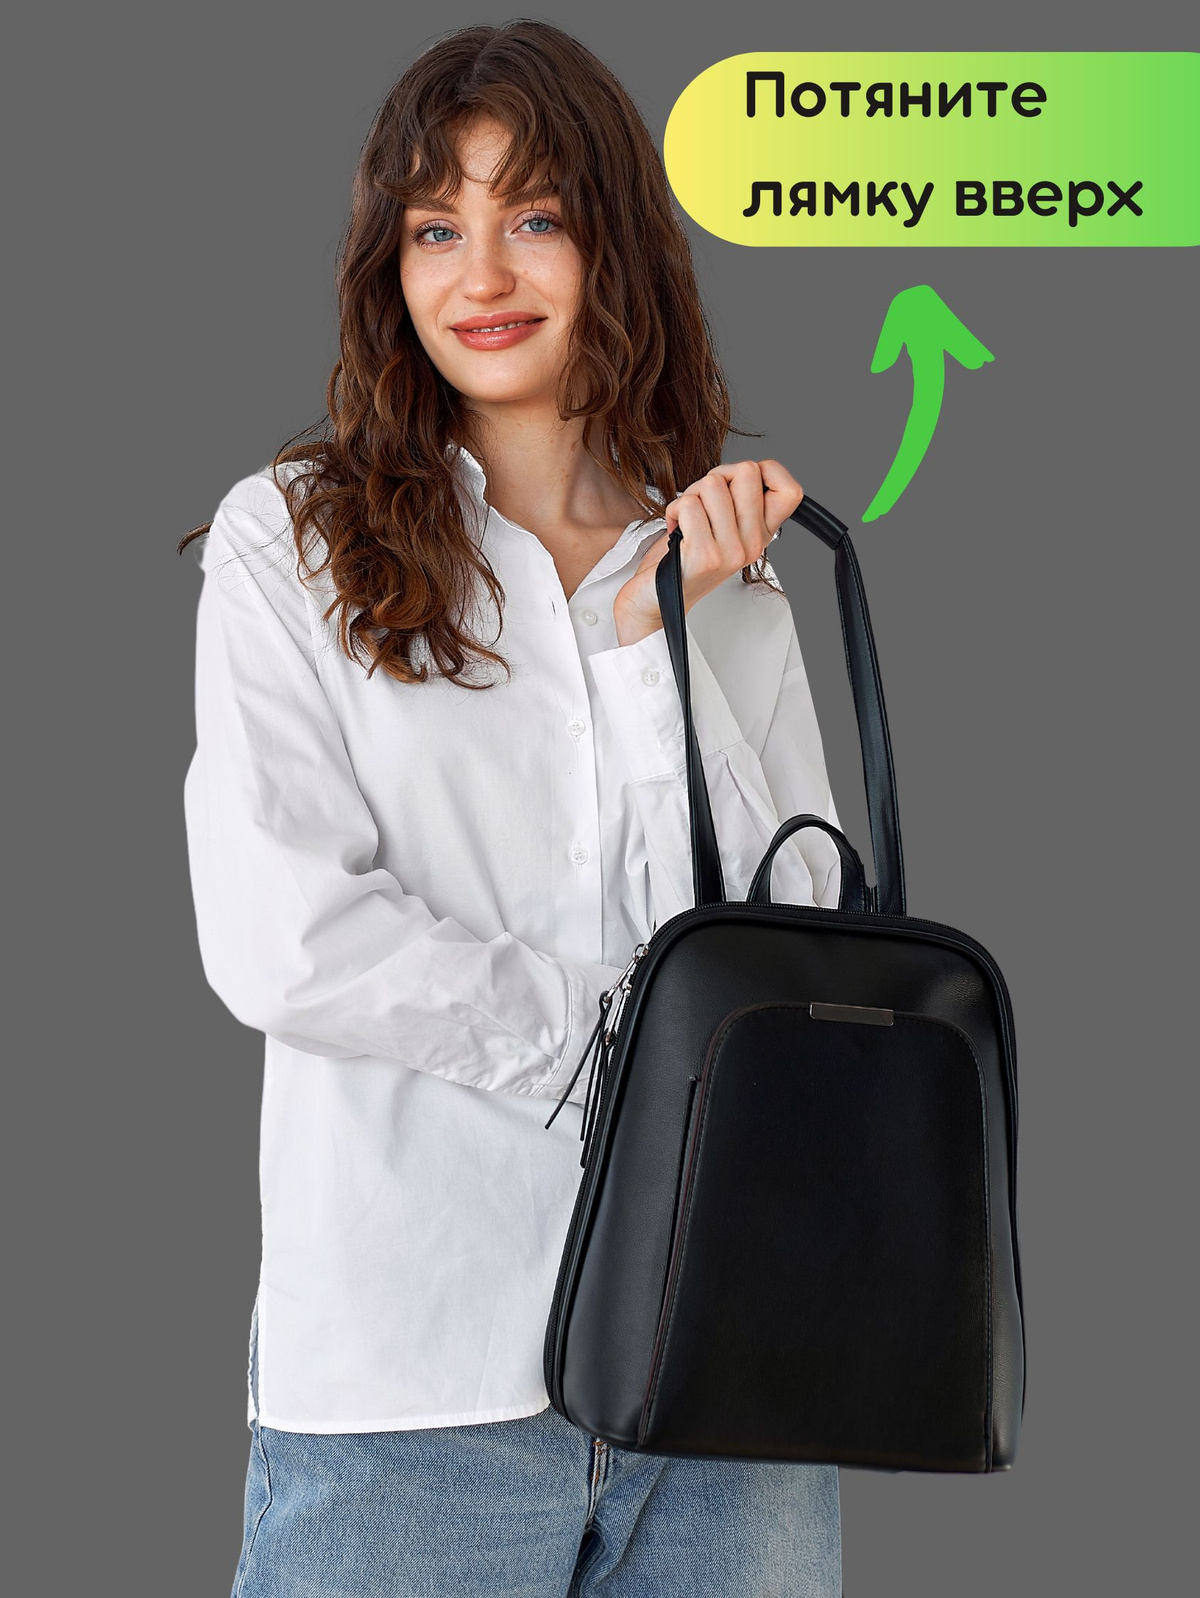 Женский рюкзак легко трансформируется в сумку на плечо (через плечо), нужно потянуть за лямку на верх. По одной цене вы получаете сумку женскую на плечо и рюкзак женский городской. 